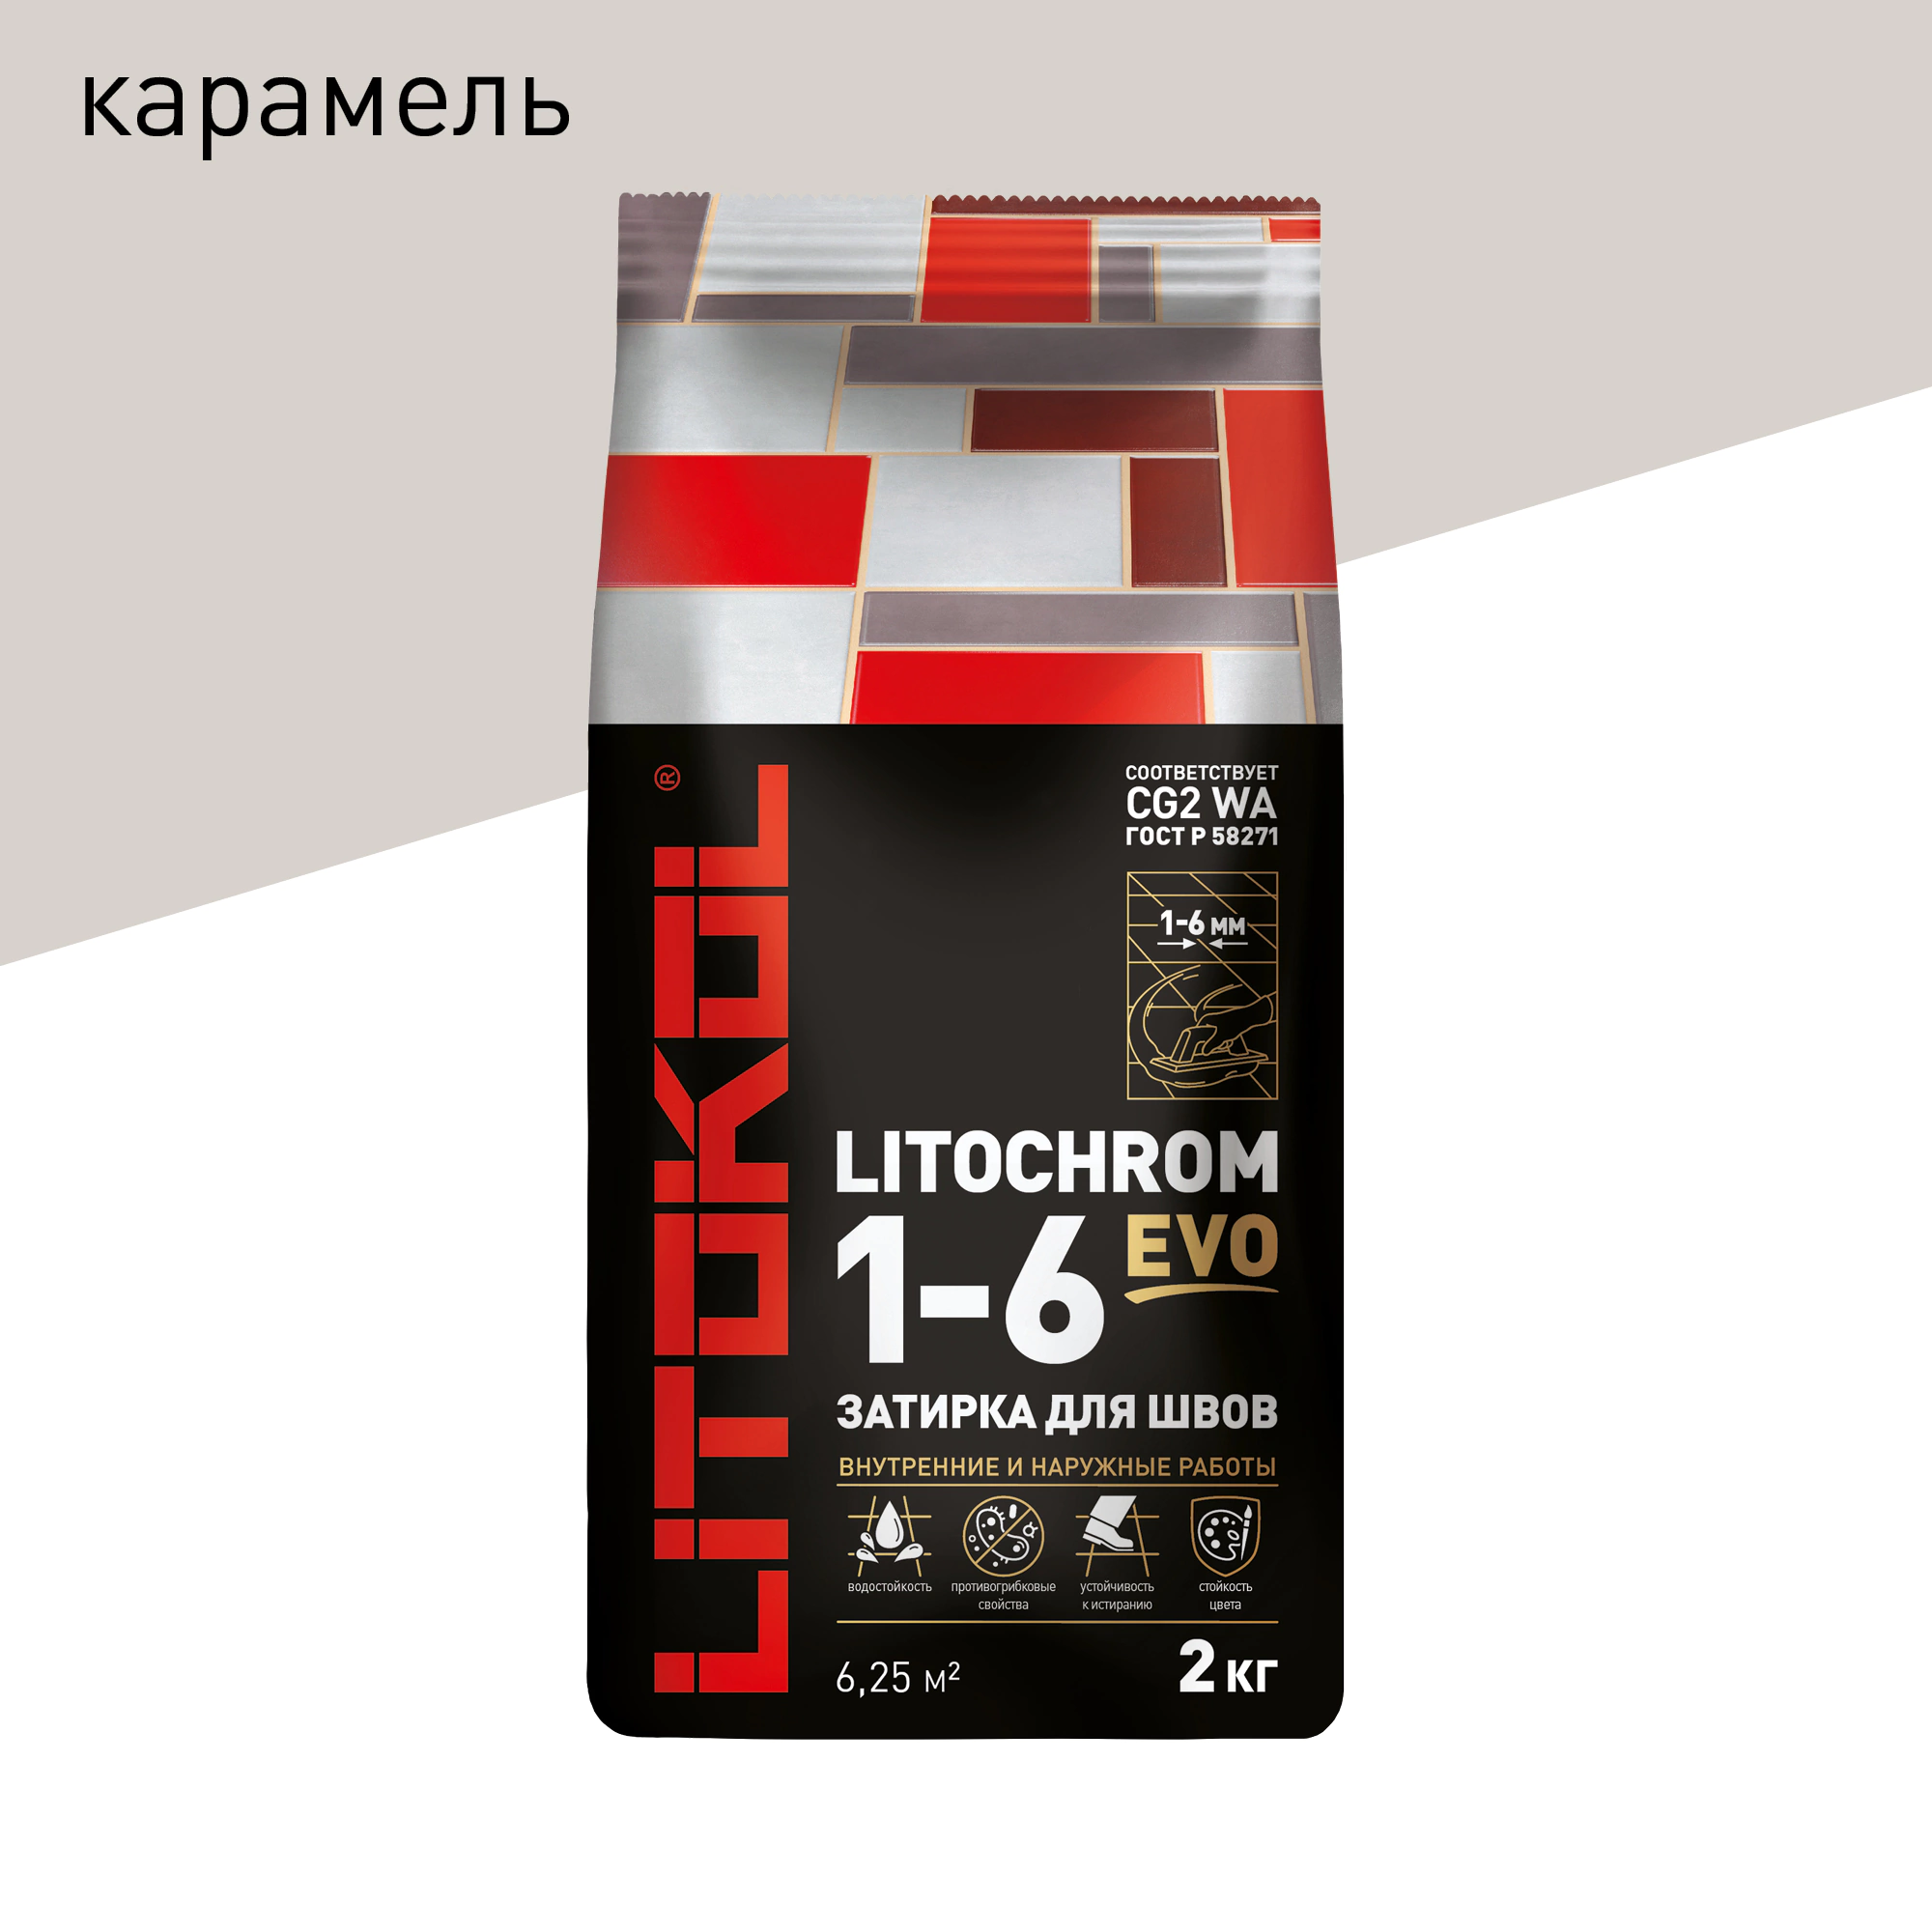 Затирка для швов LITOKOL LITOCHROM 1-6 EVO LE 210 карамель 2 кг